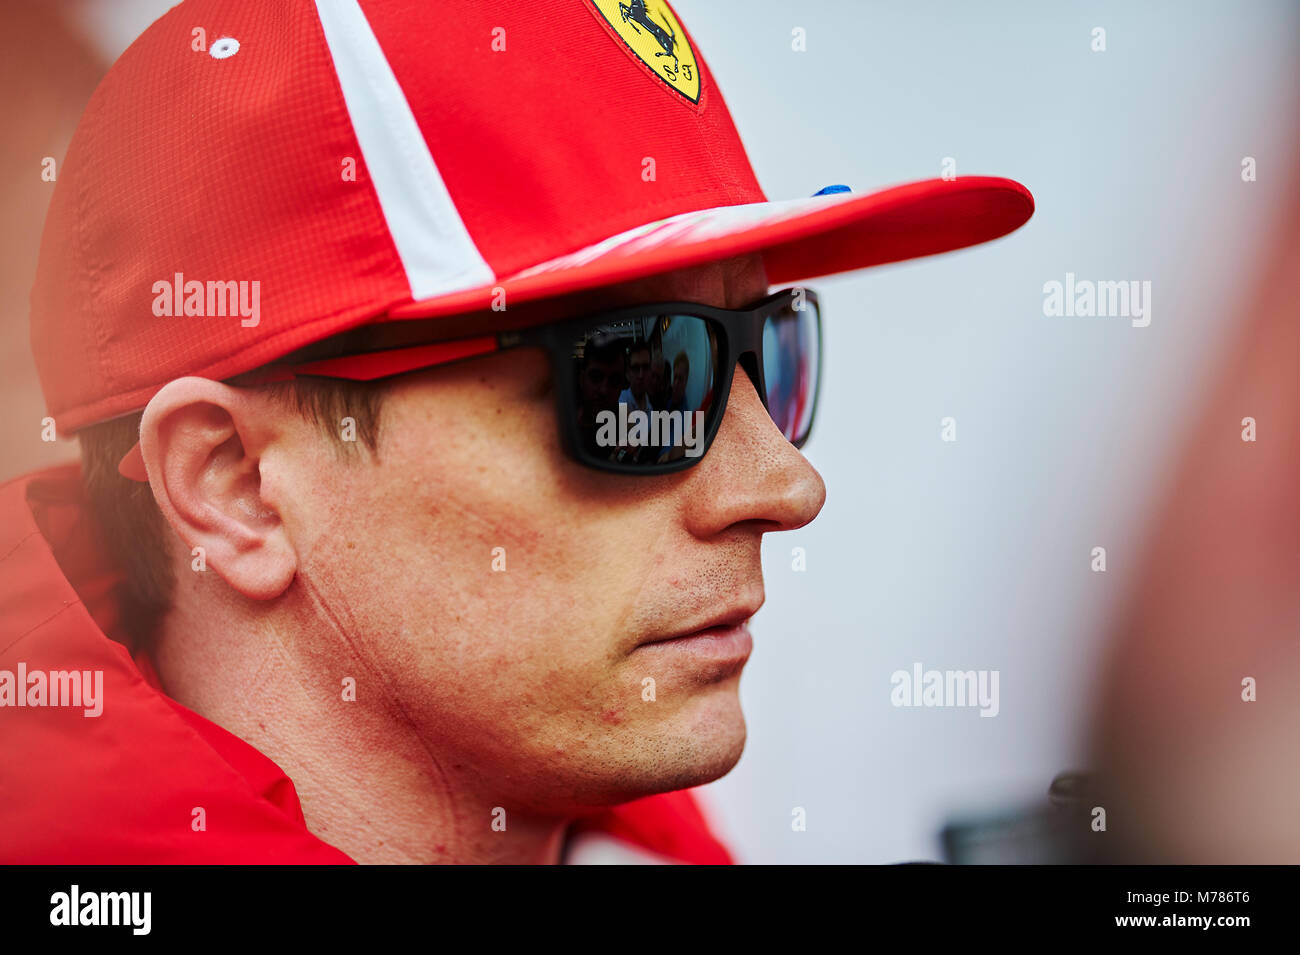 Barcelona, España. 9 Mar, 2018. Kimi Raikkonen del equipo Ferrari, ofrece una conferencia de prensa después de hacer el mejor tiempo de vuelta durante la temporada anterior, pruebas de Fórmula Uno. Crédito: Pablo Guillen/Alamy Live News Foto de stock